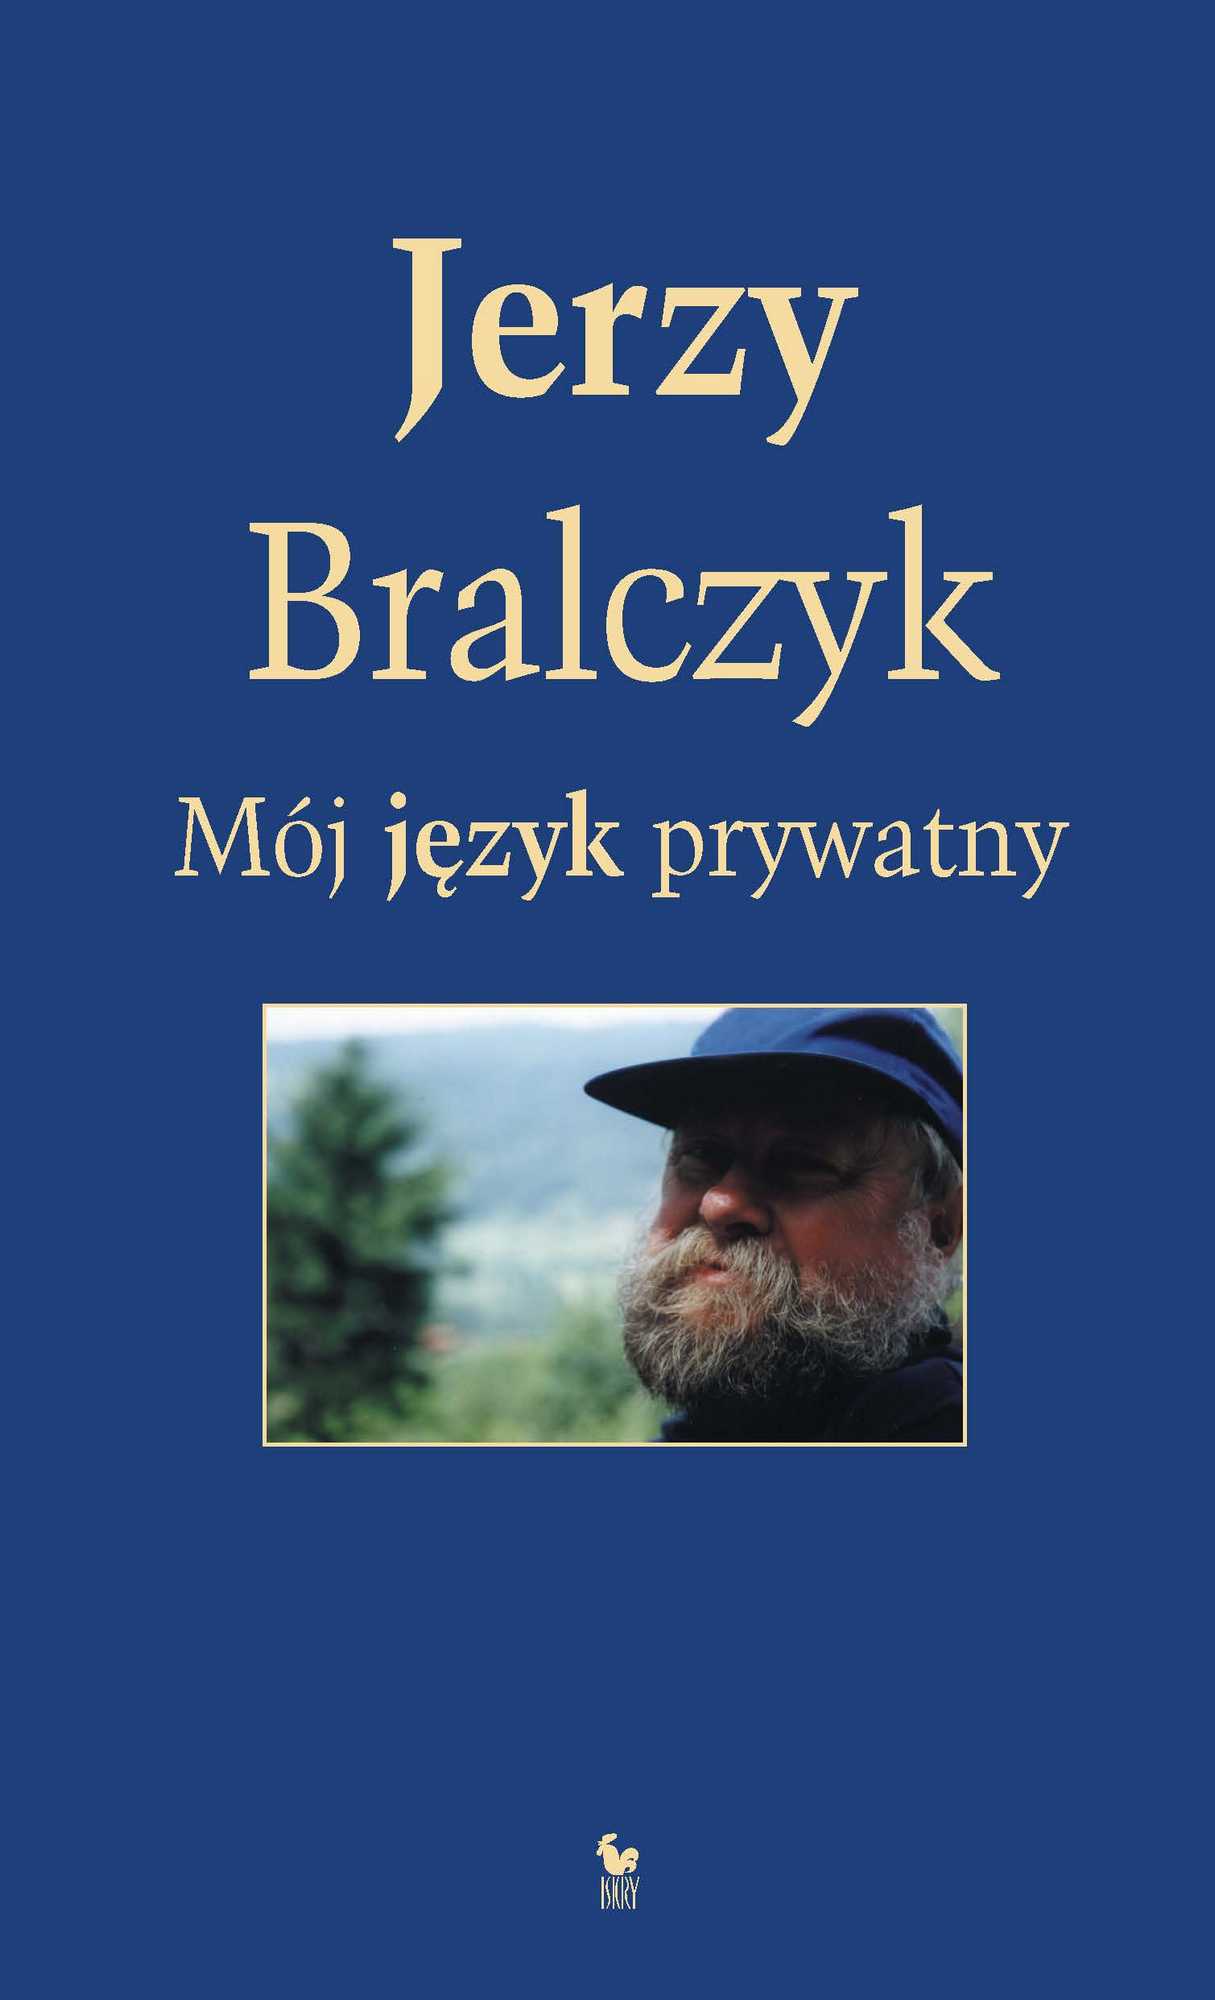 Jerzy Bralczyk, „Mój język prywatny” – okładka (źródło: materiały prasowe wydawcy)